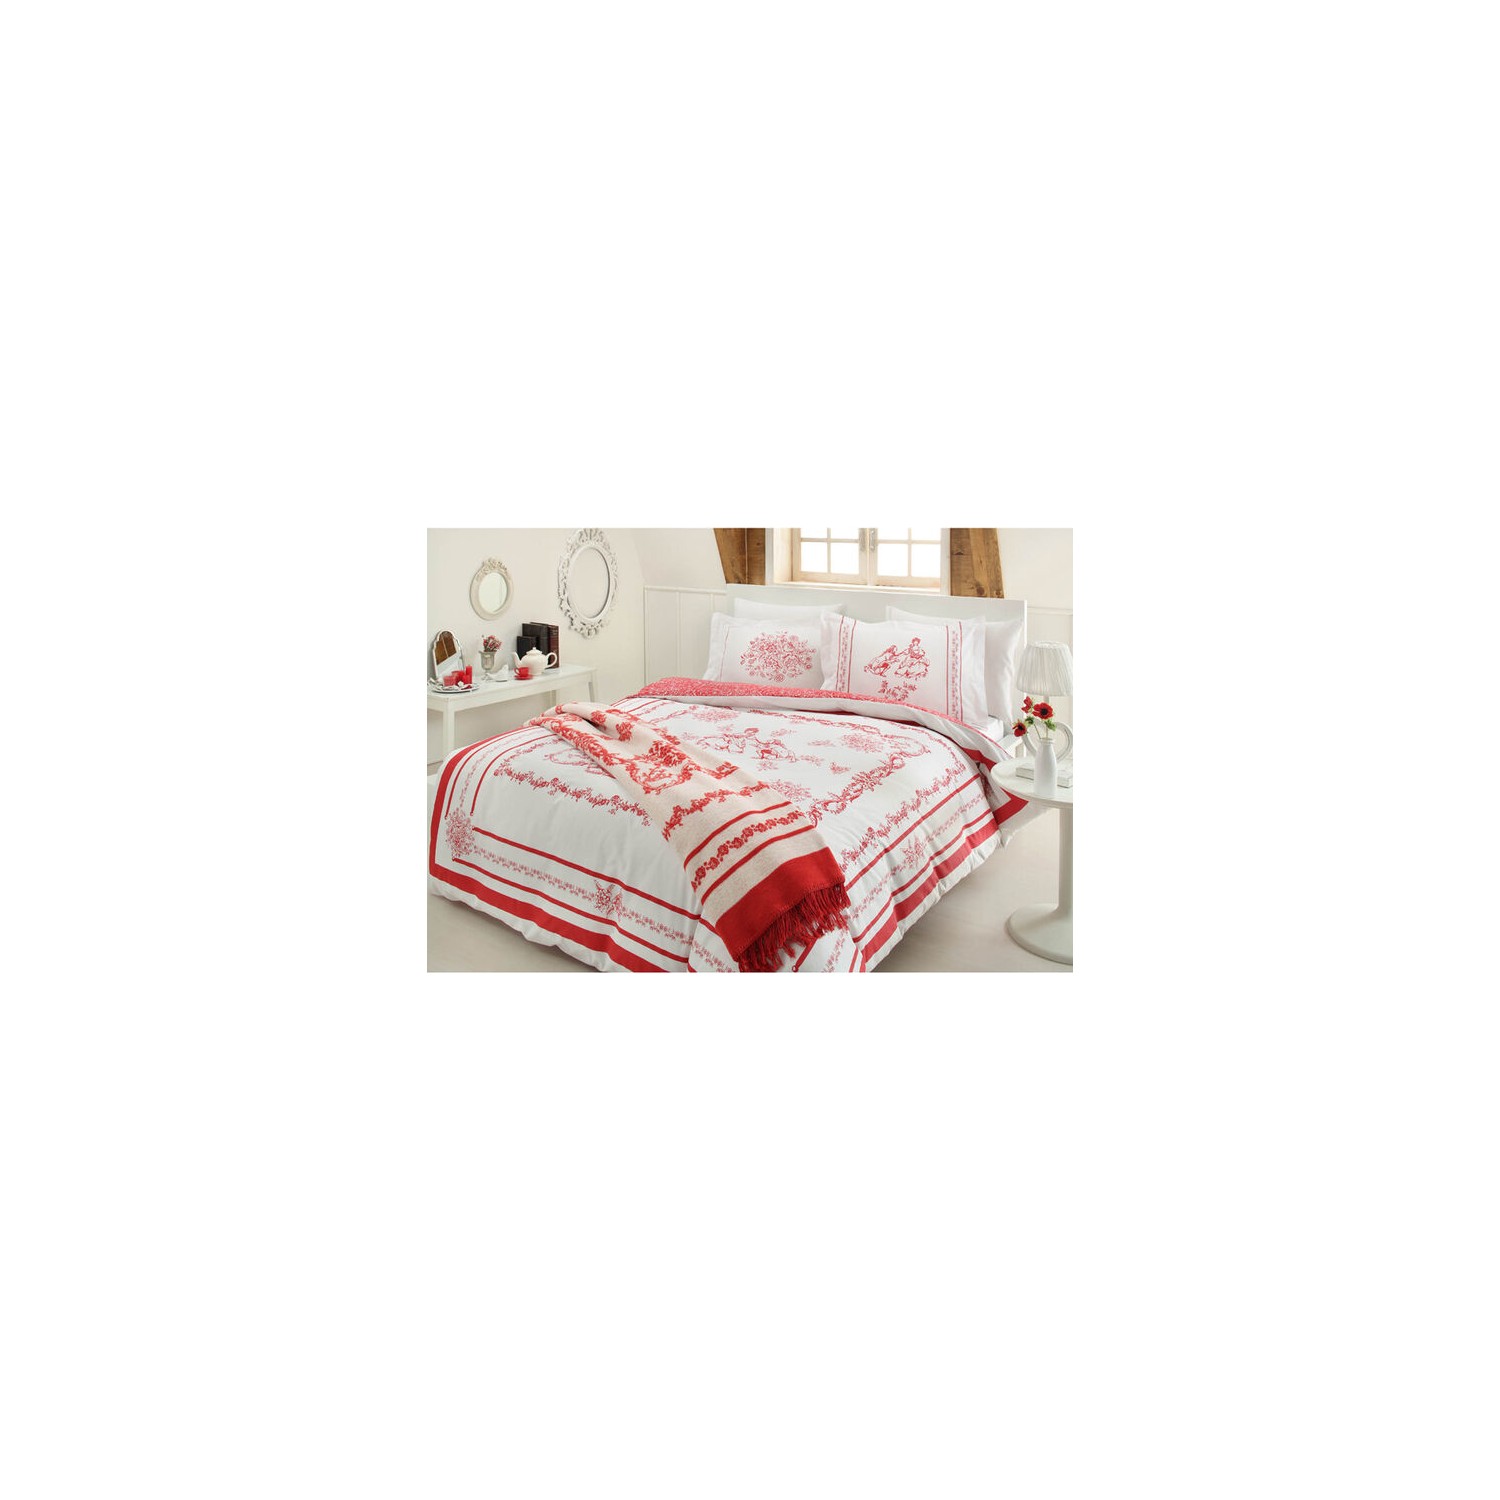 Комплект постельного белья с одеялом Ozdilek My Valentine комплект постельного белья с одеялом cat opera 90 x 190 см розовый